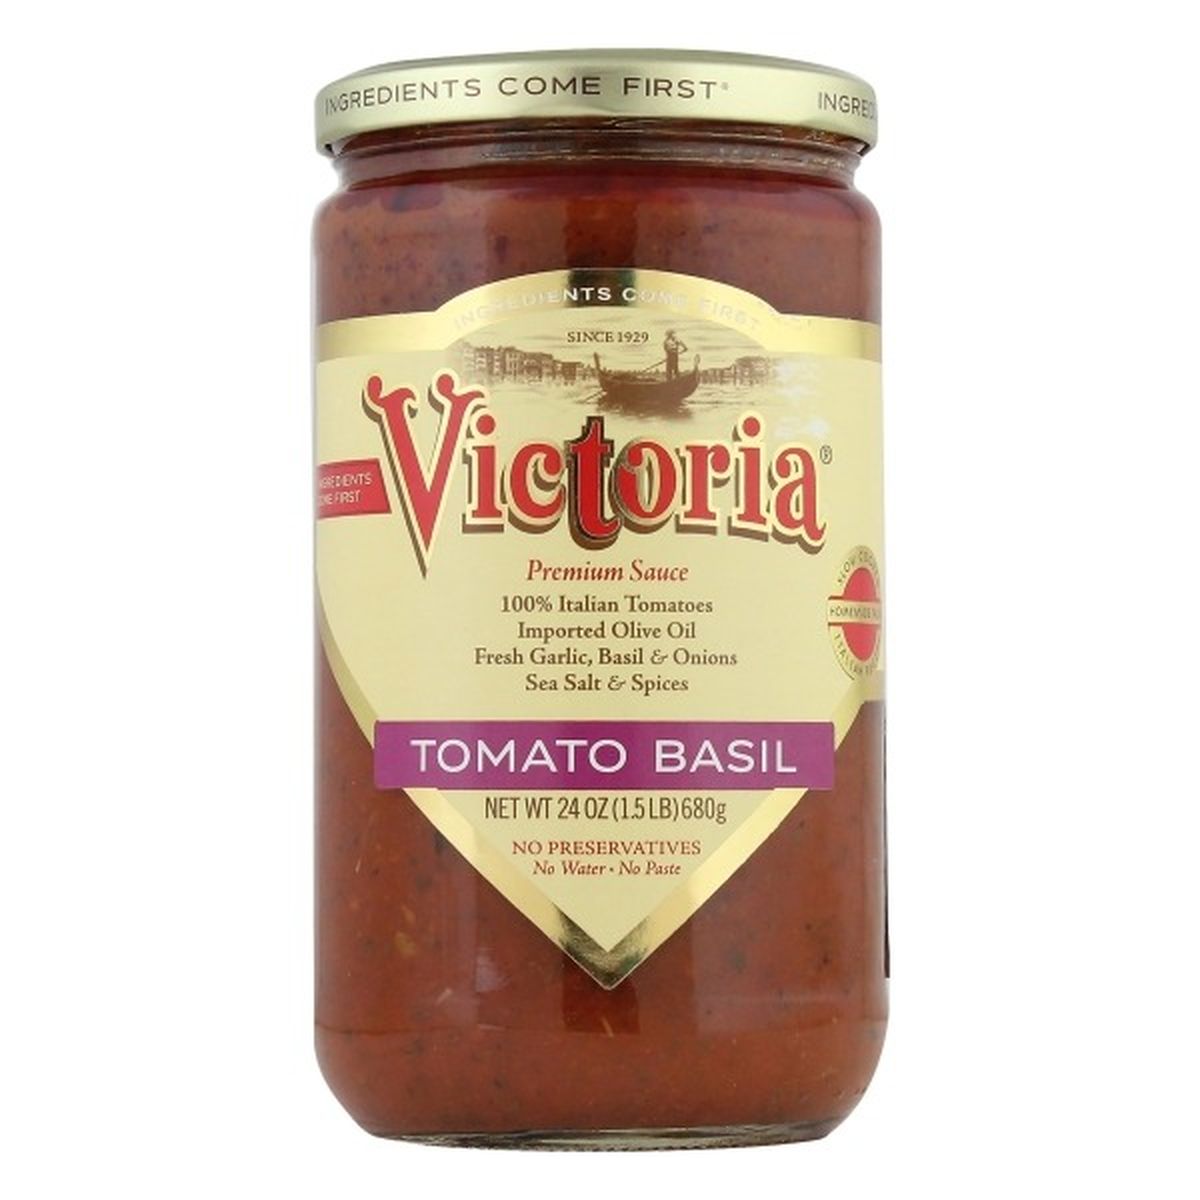 Calories in Victoria Sauce, Tomato Basil, Premium